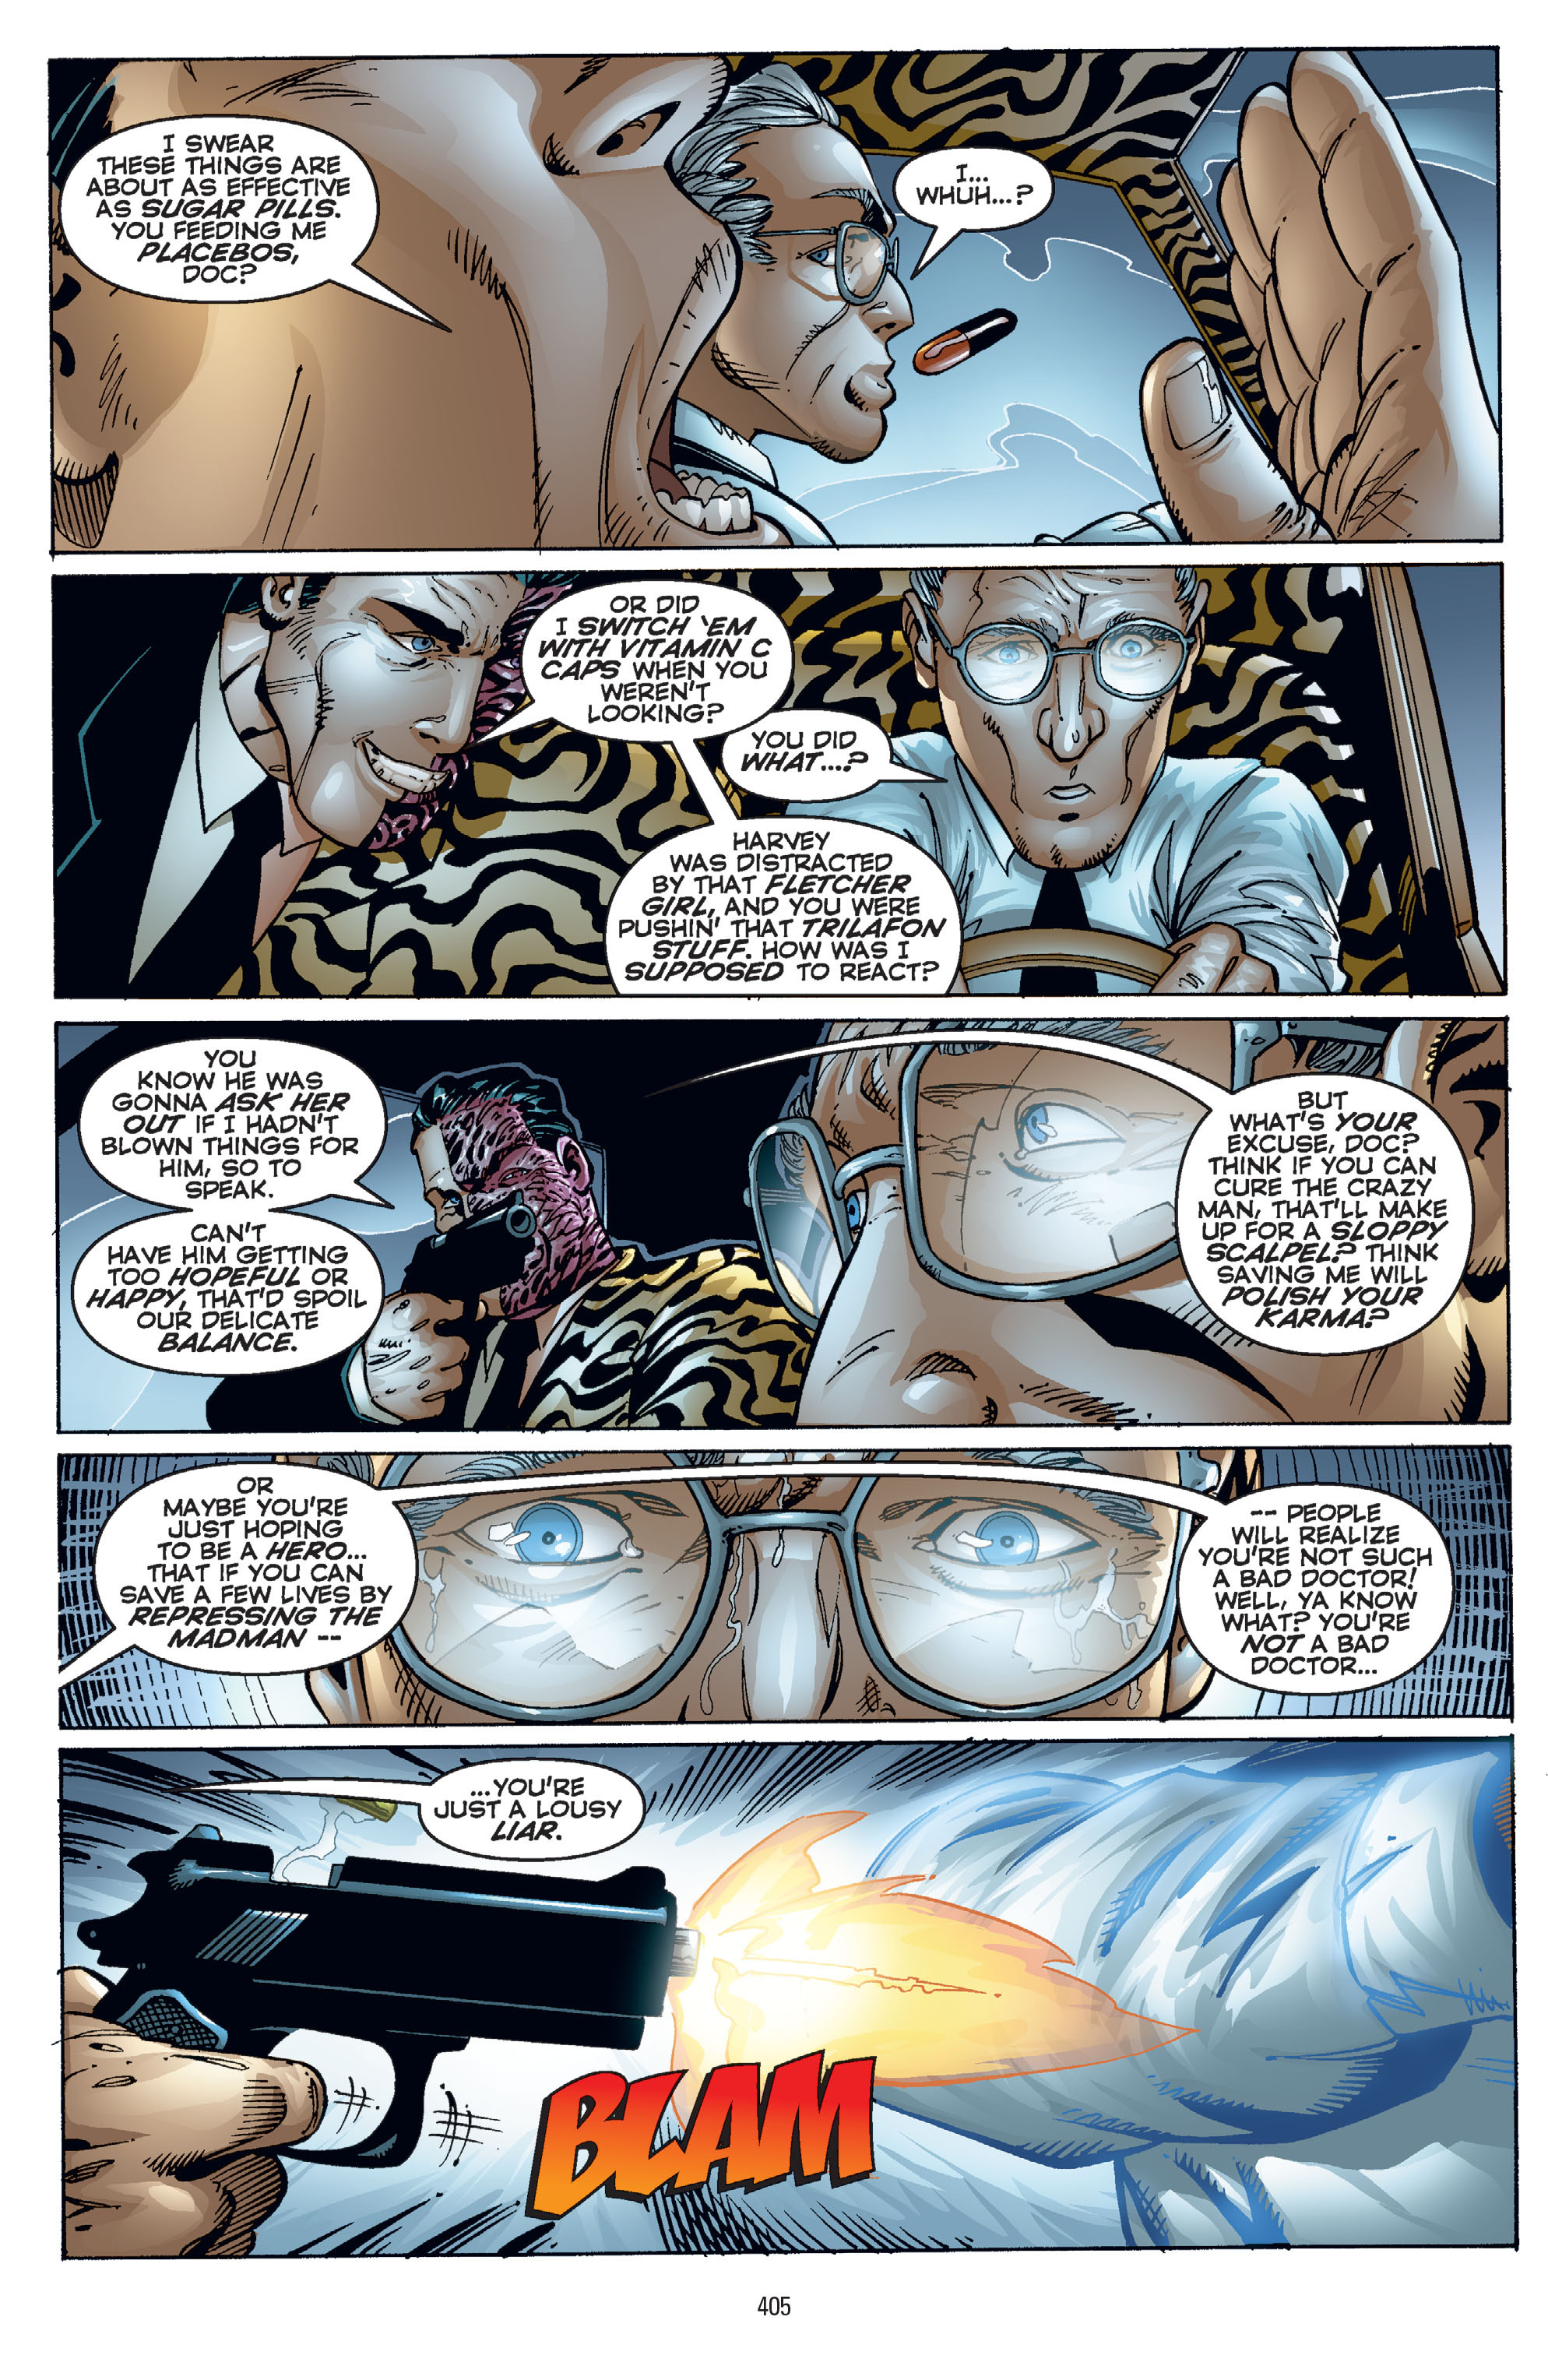 DC Comics/Dark Horse Comics: Justice League Full #1 - English 395